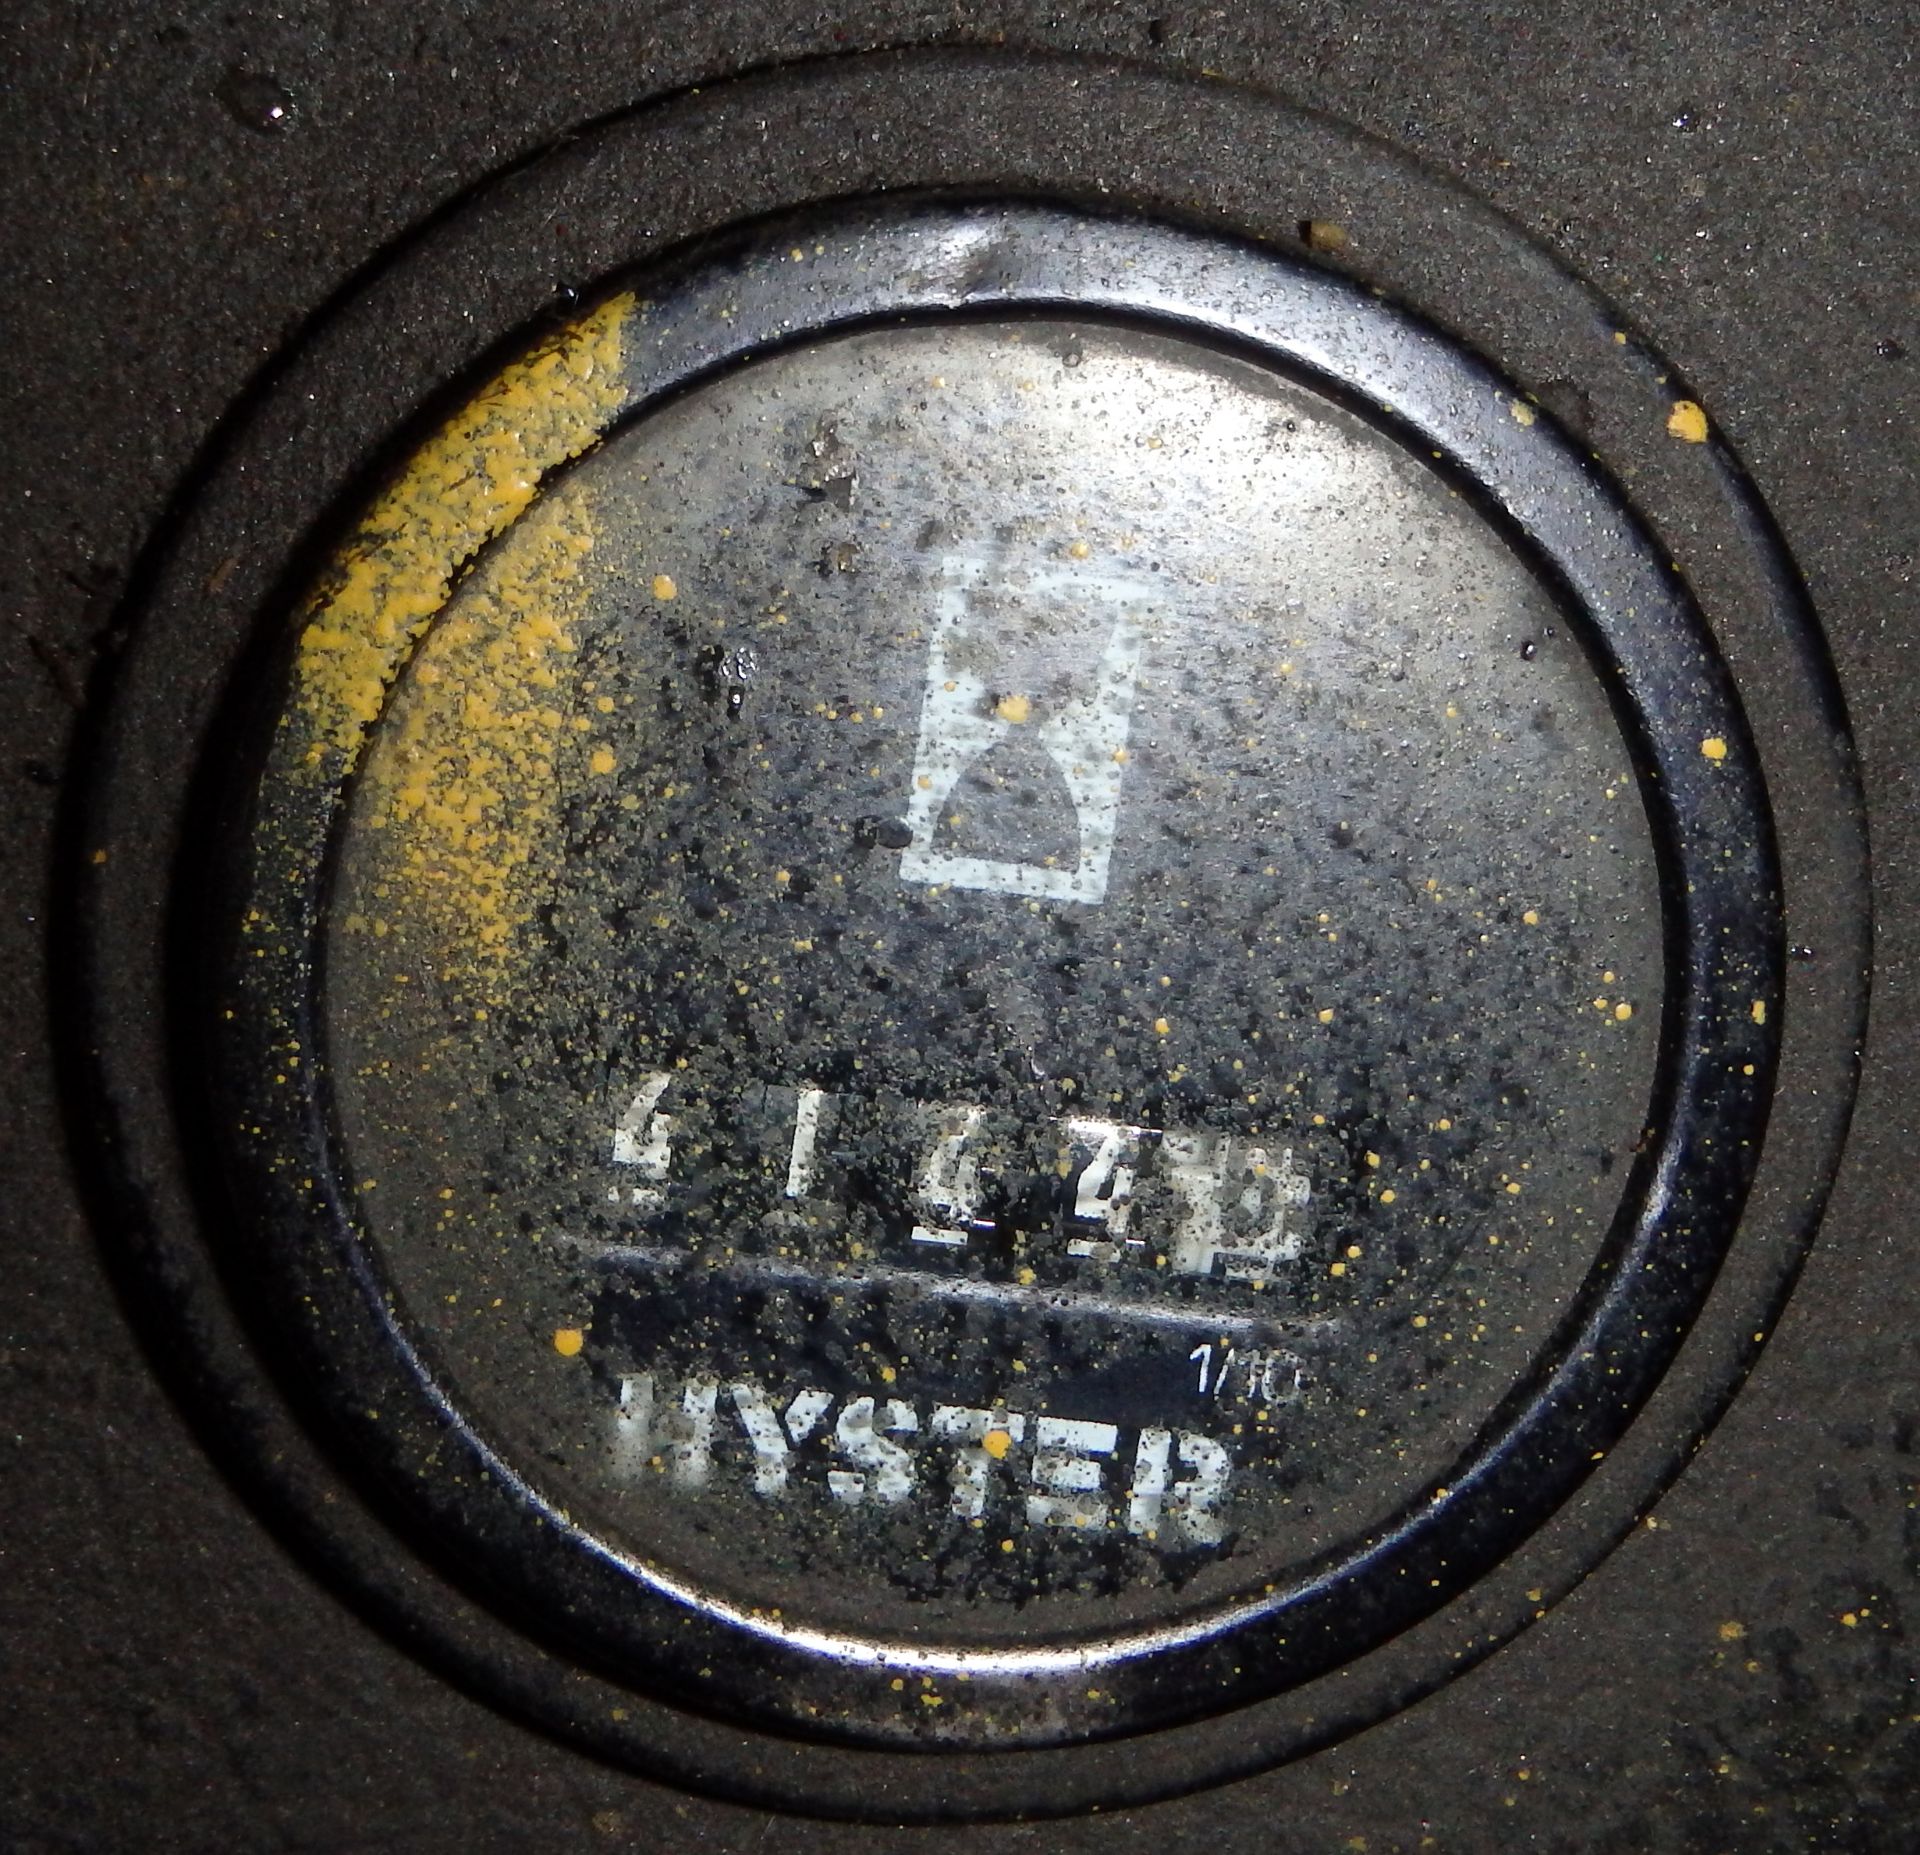 Hyster LP forklift - Image 9 of 9